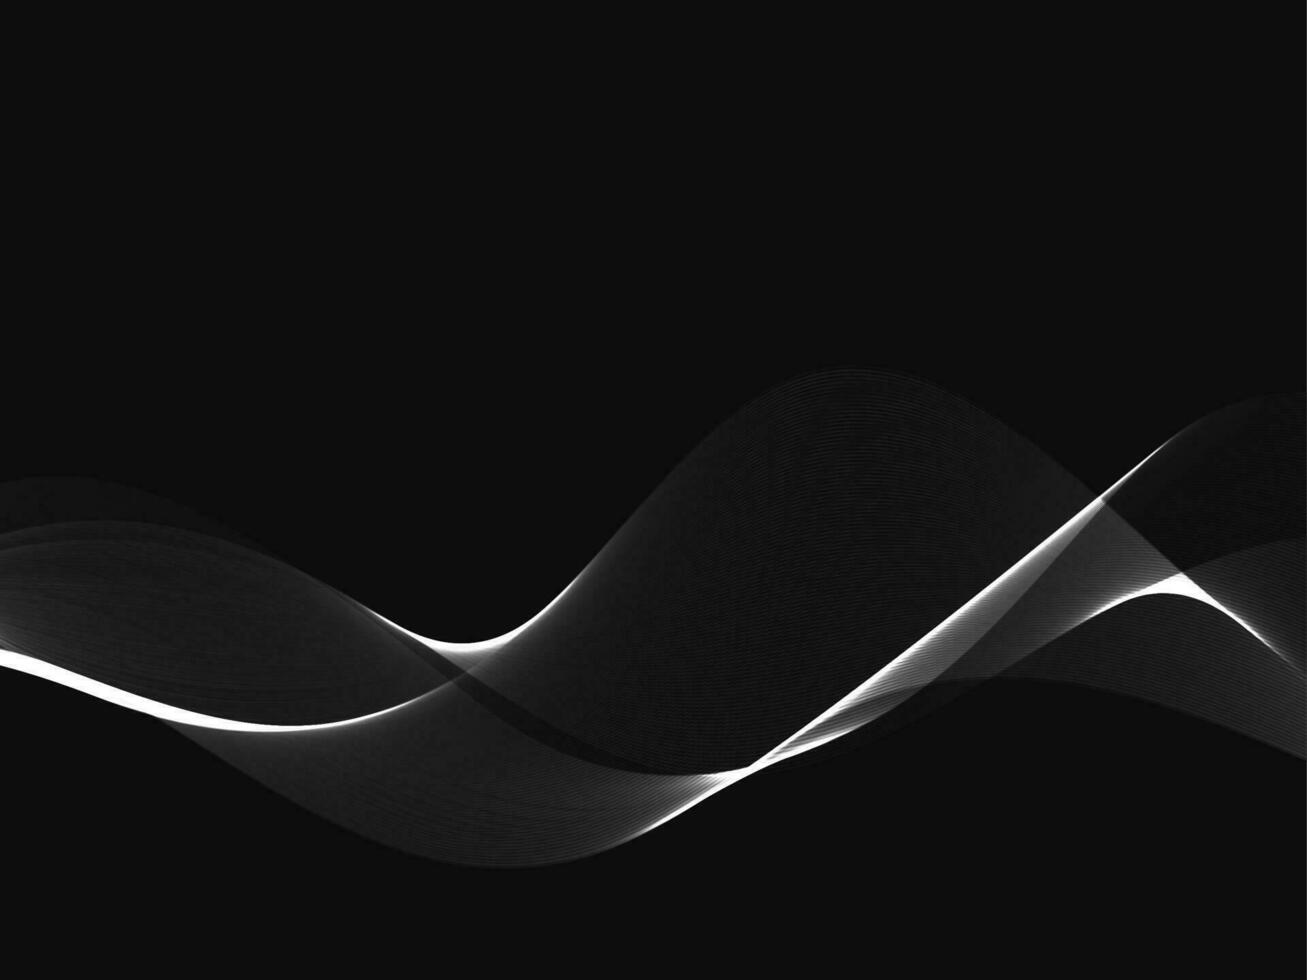 design de onda fluindo de prata em fundo escuro vetor